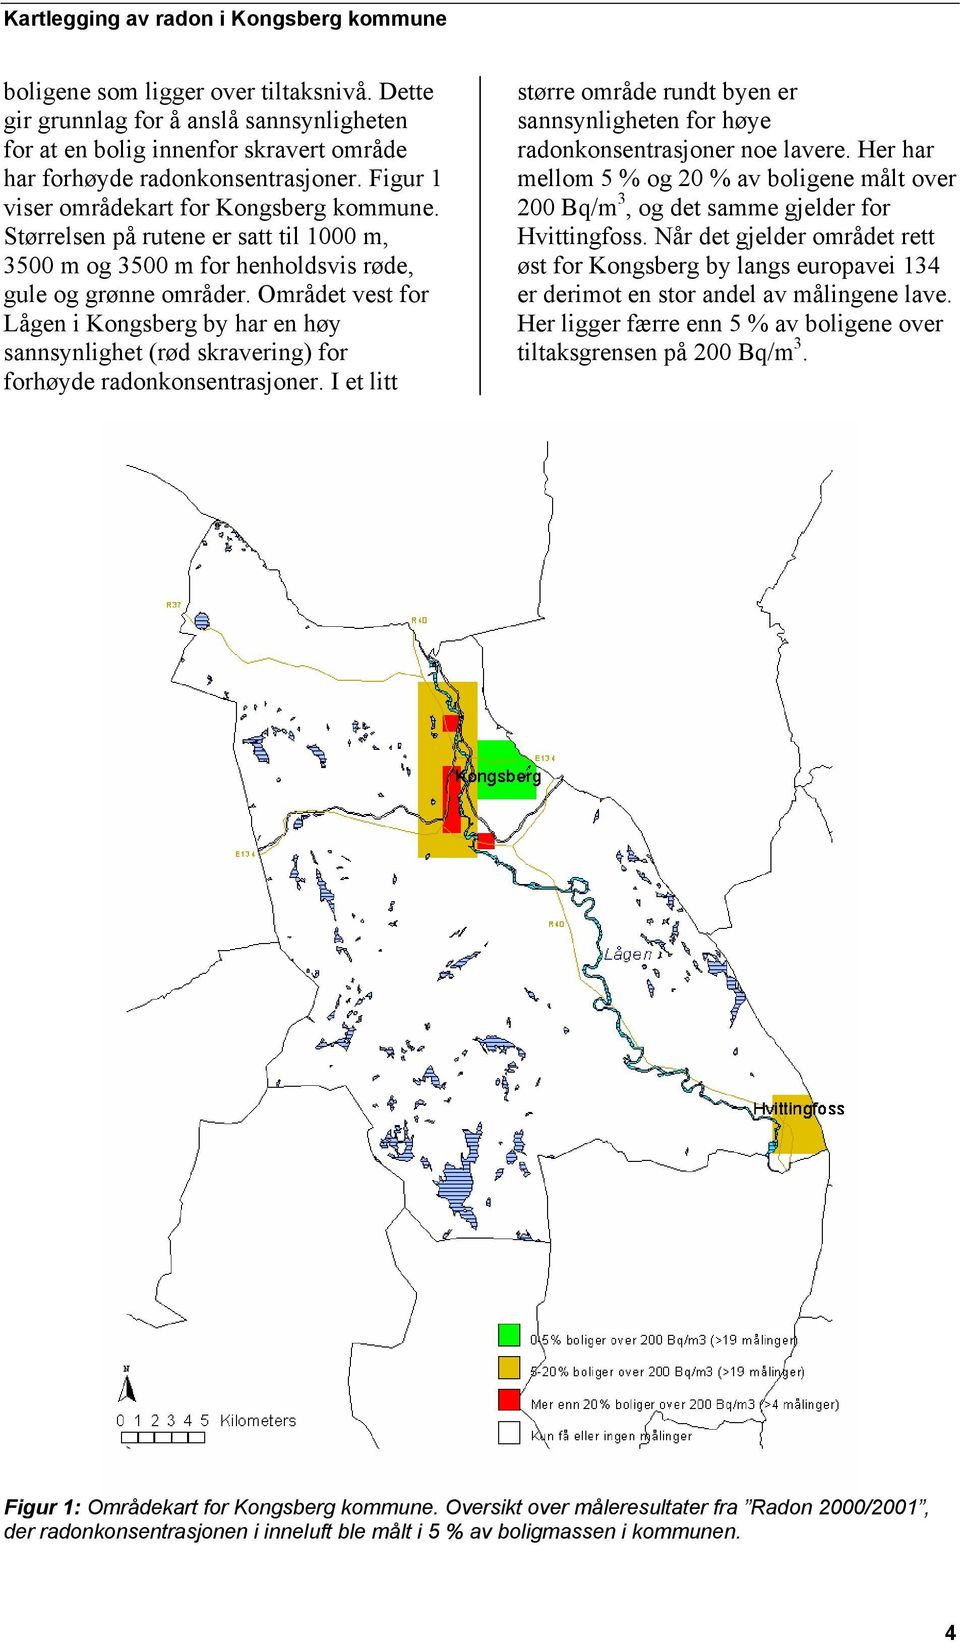 Området vest for Lågen i Kongsberg by har en høy sannsynlighet (rød skravering) for forhøyde radonkonsentrasjoner.